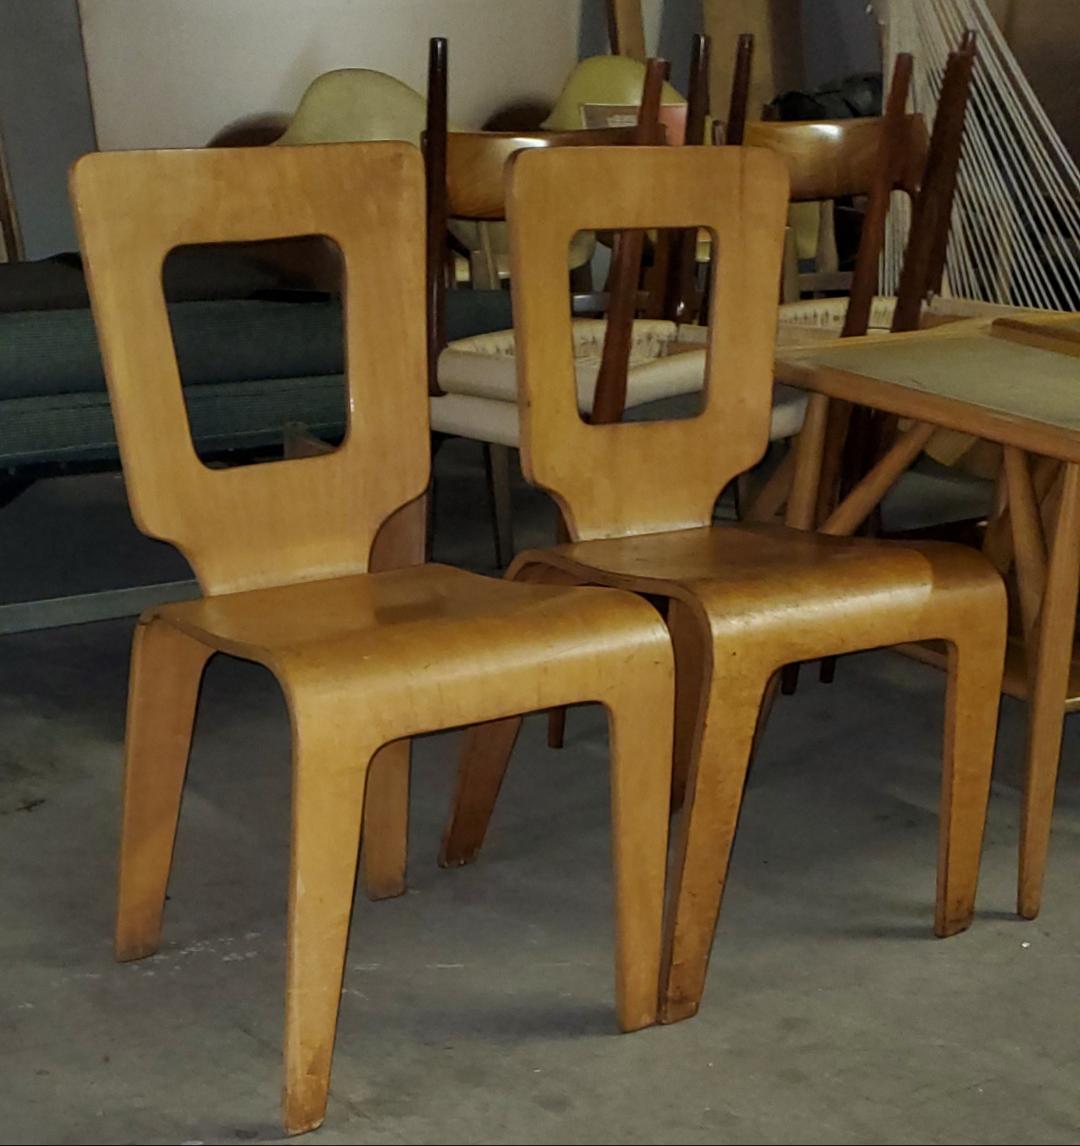 2 chaises de salle à manger en contreplaqué moulé fabriquées aux Etats-Unis dans les années 1940, également connues sous le nom de chaises modèle 102.
Herbert von Thaden et Donald Lewis Jordan, le duo de designers de la société de meubles en